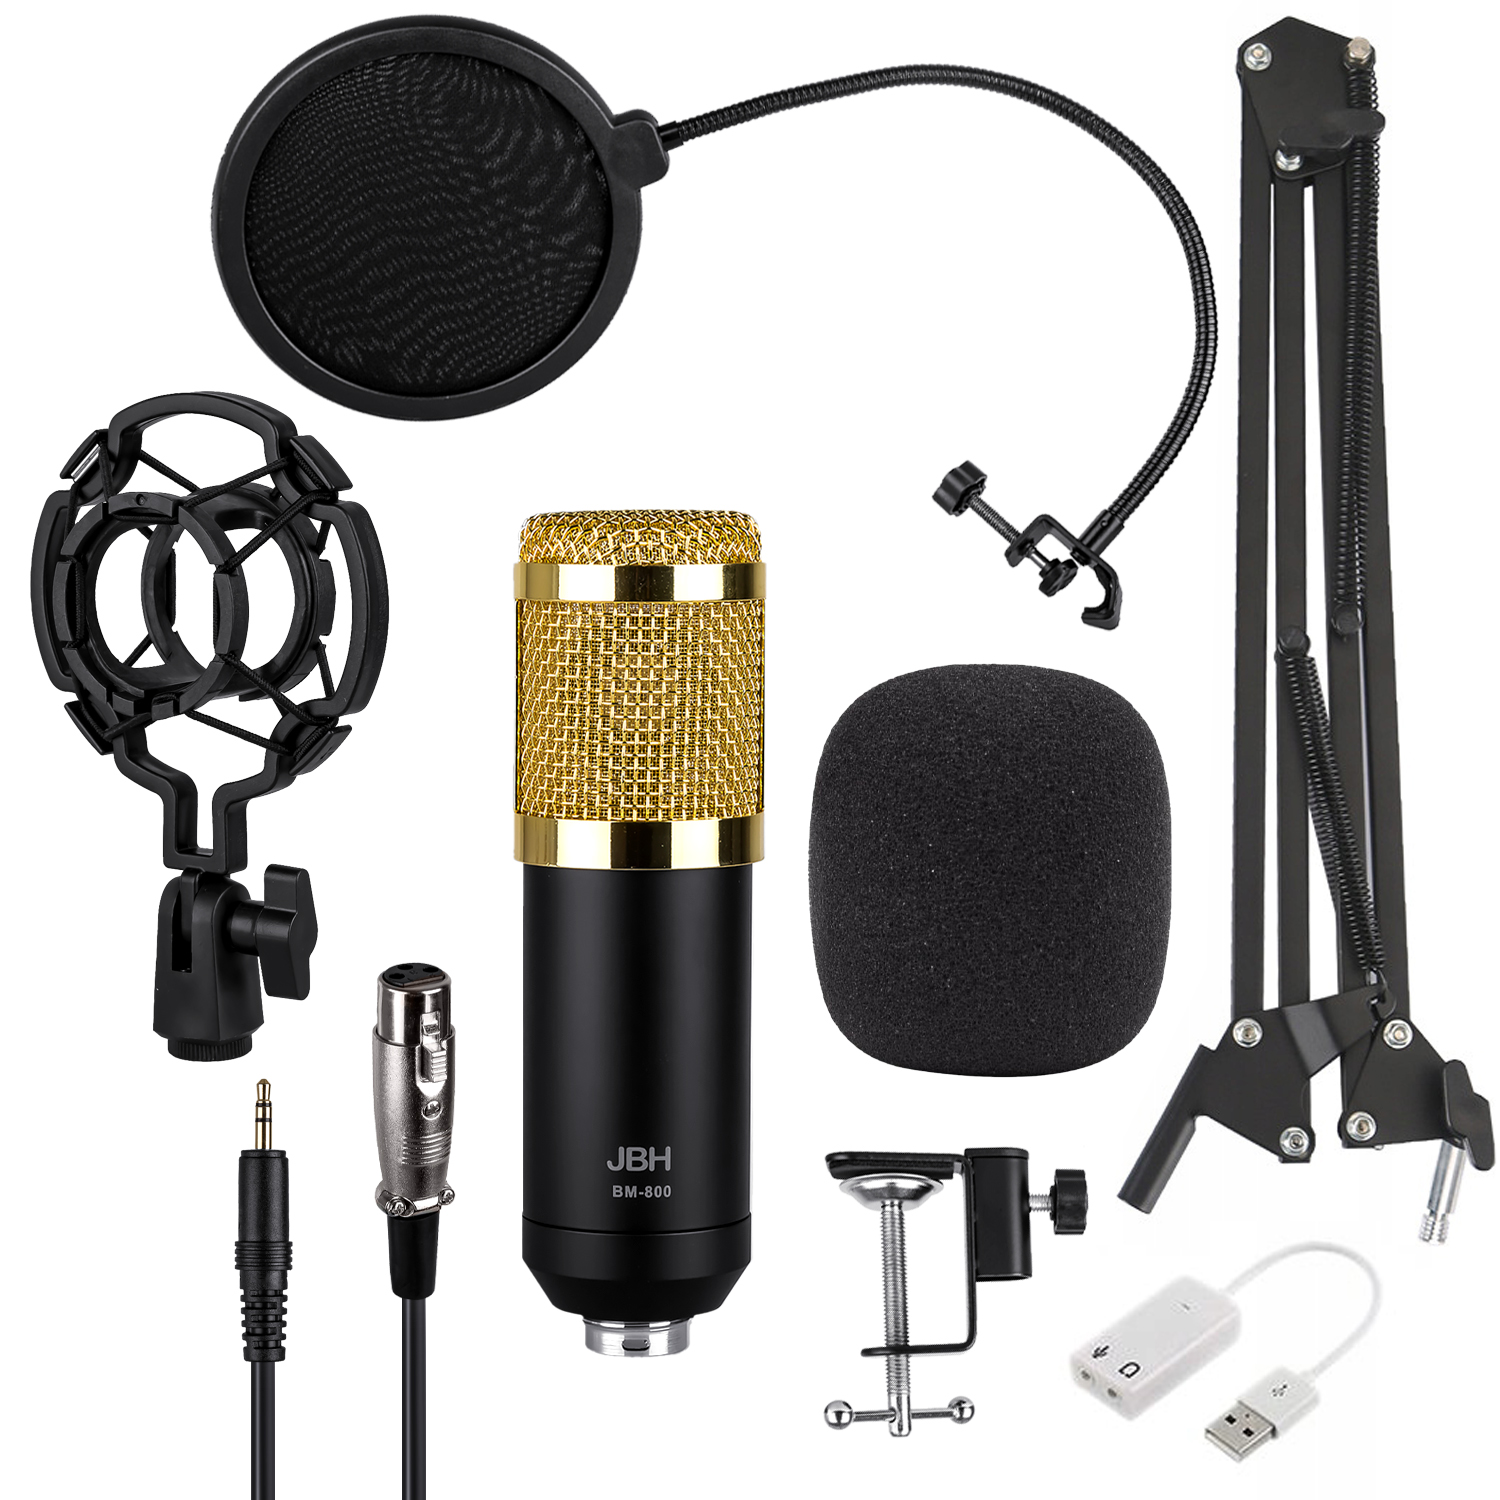 Конденсаторный микрофон Набор studio BM800 JBH Золото с черным (15шт/кор)